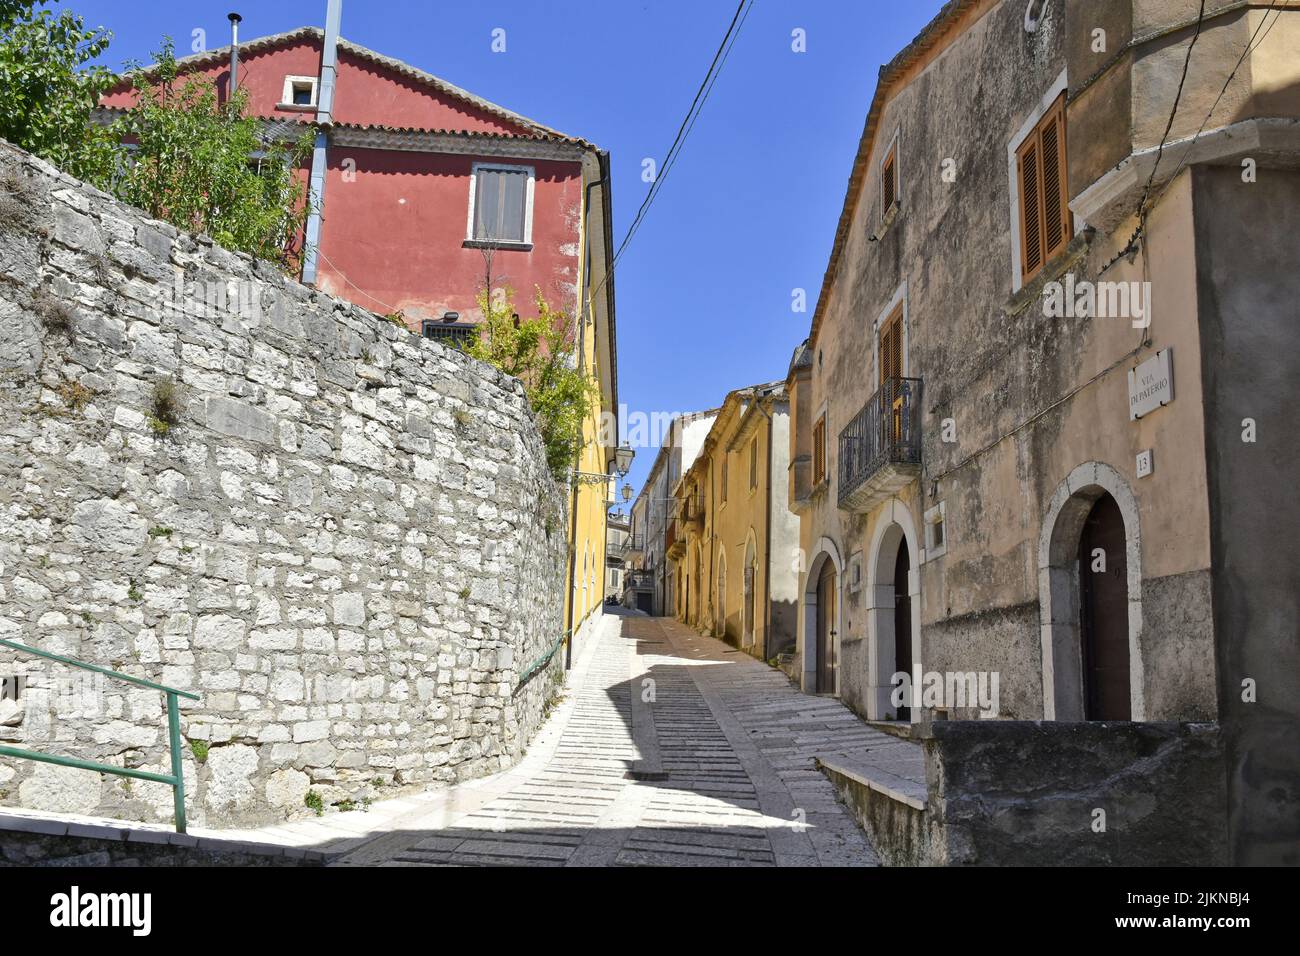 A street in Santa Croce del Sannio, a village in the Campania region of Italy Stock Photo